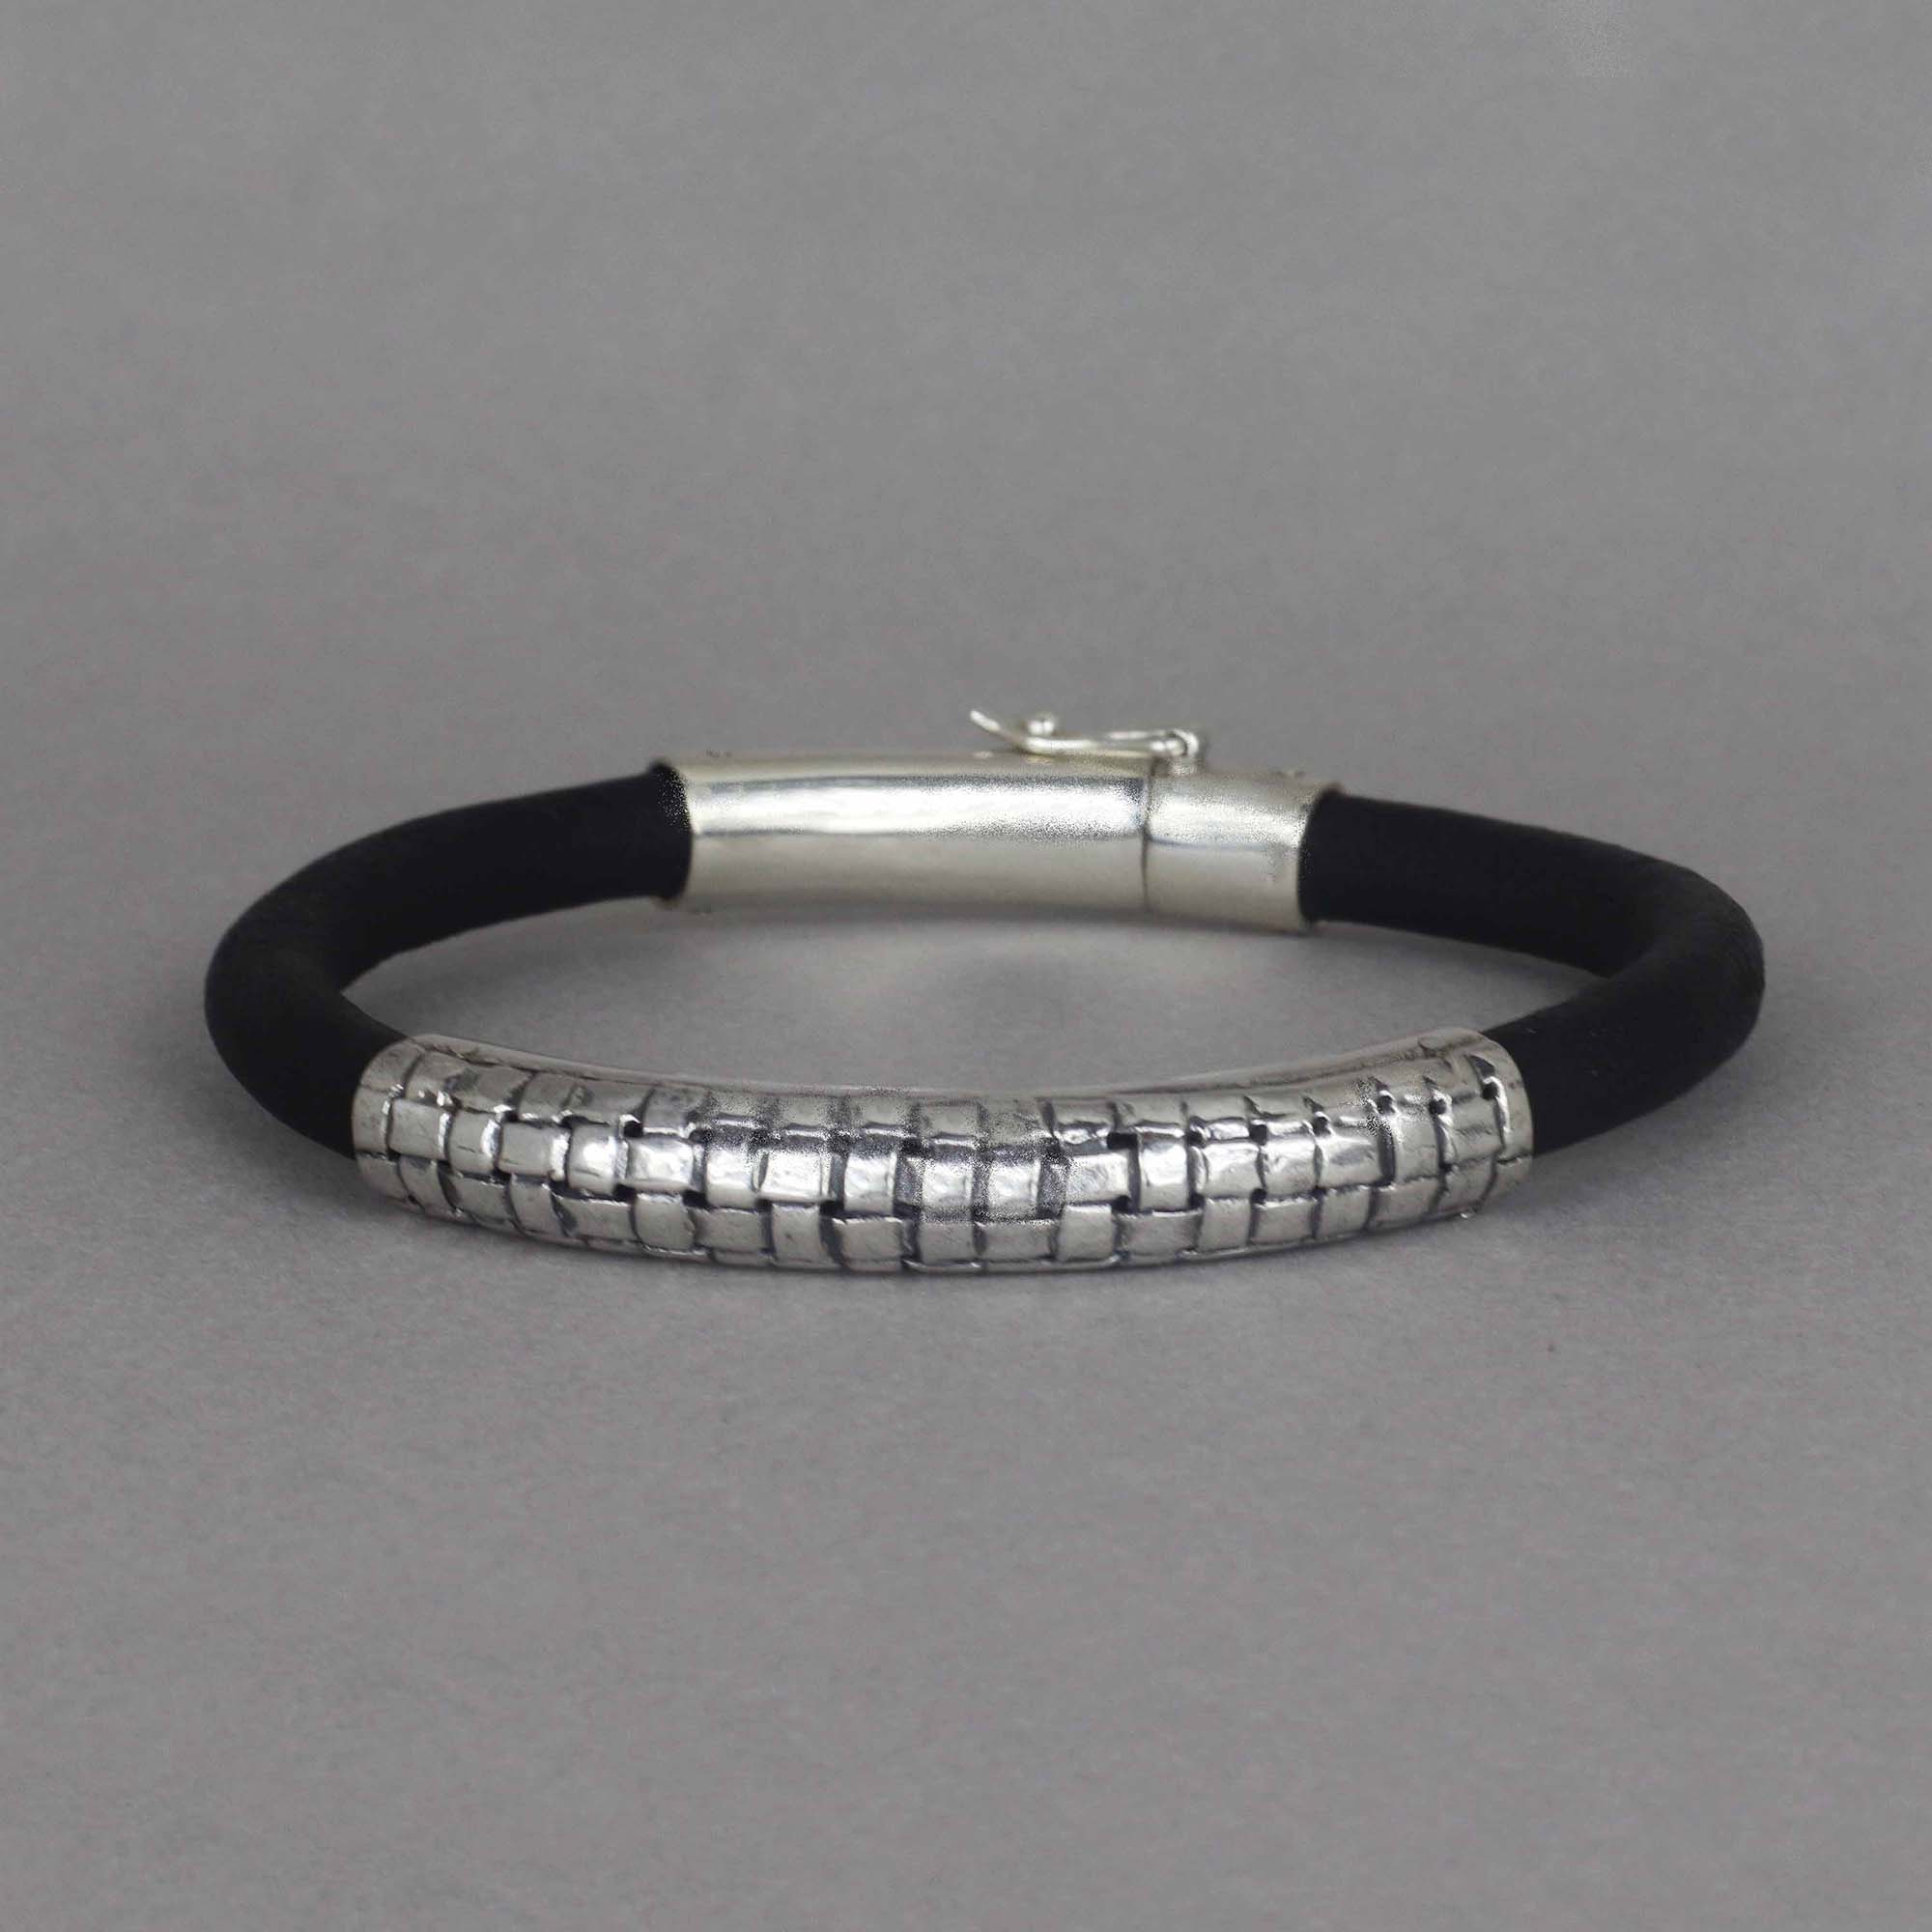 Louis Vuitton Black Digit Bracelet